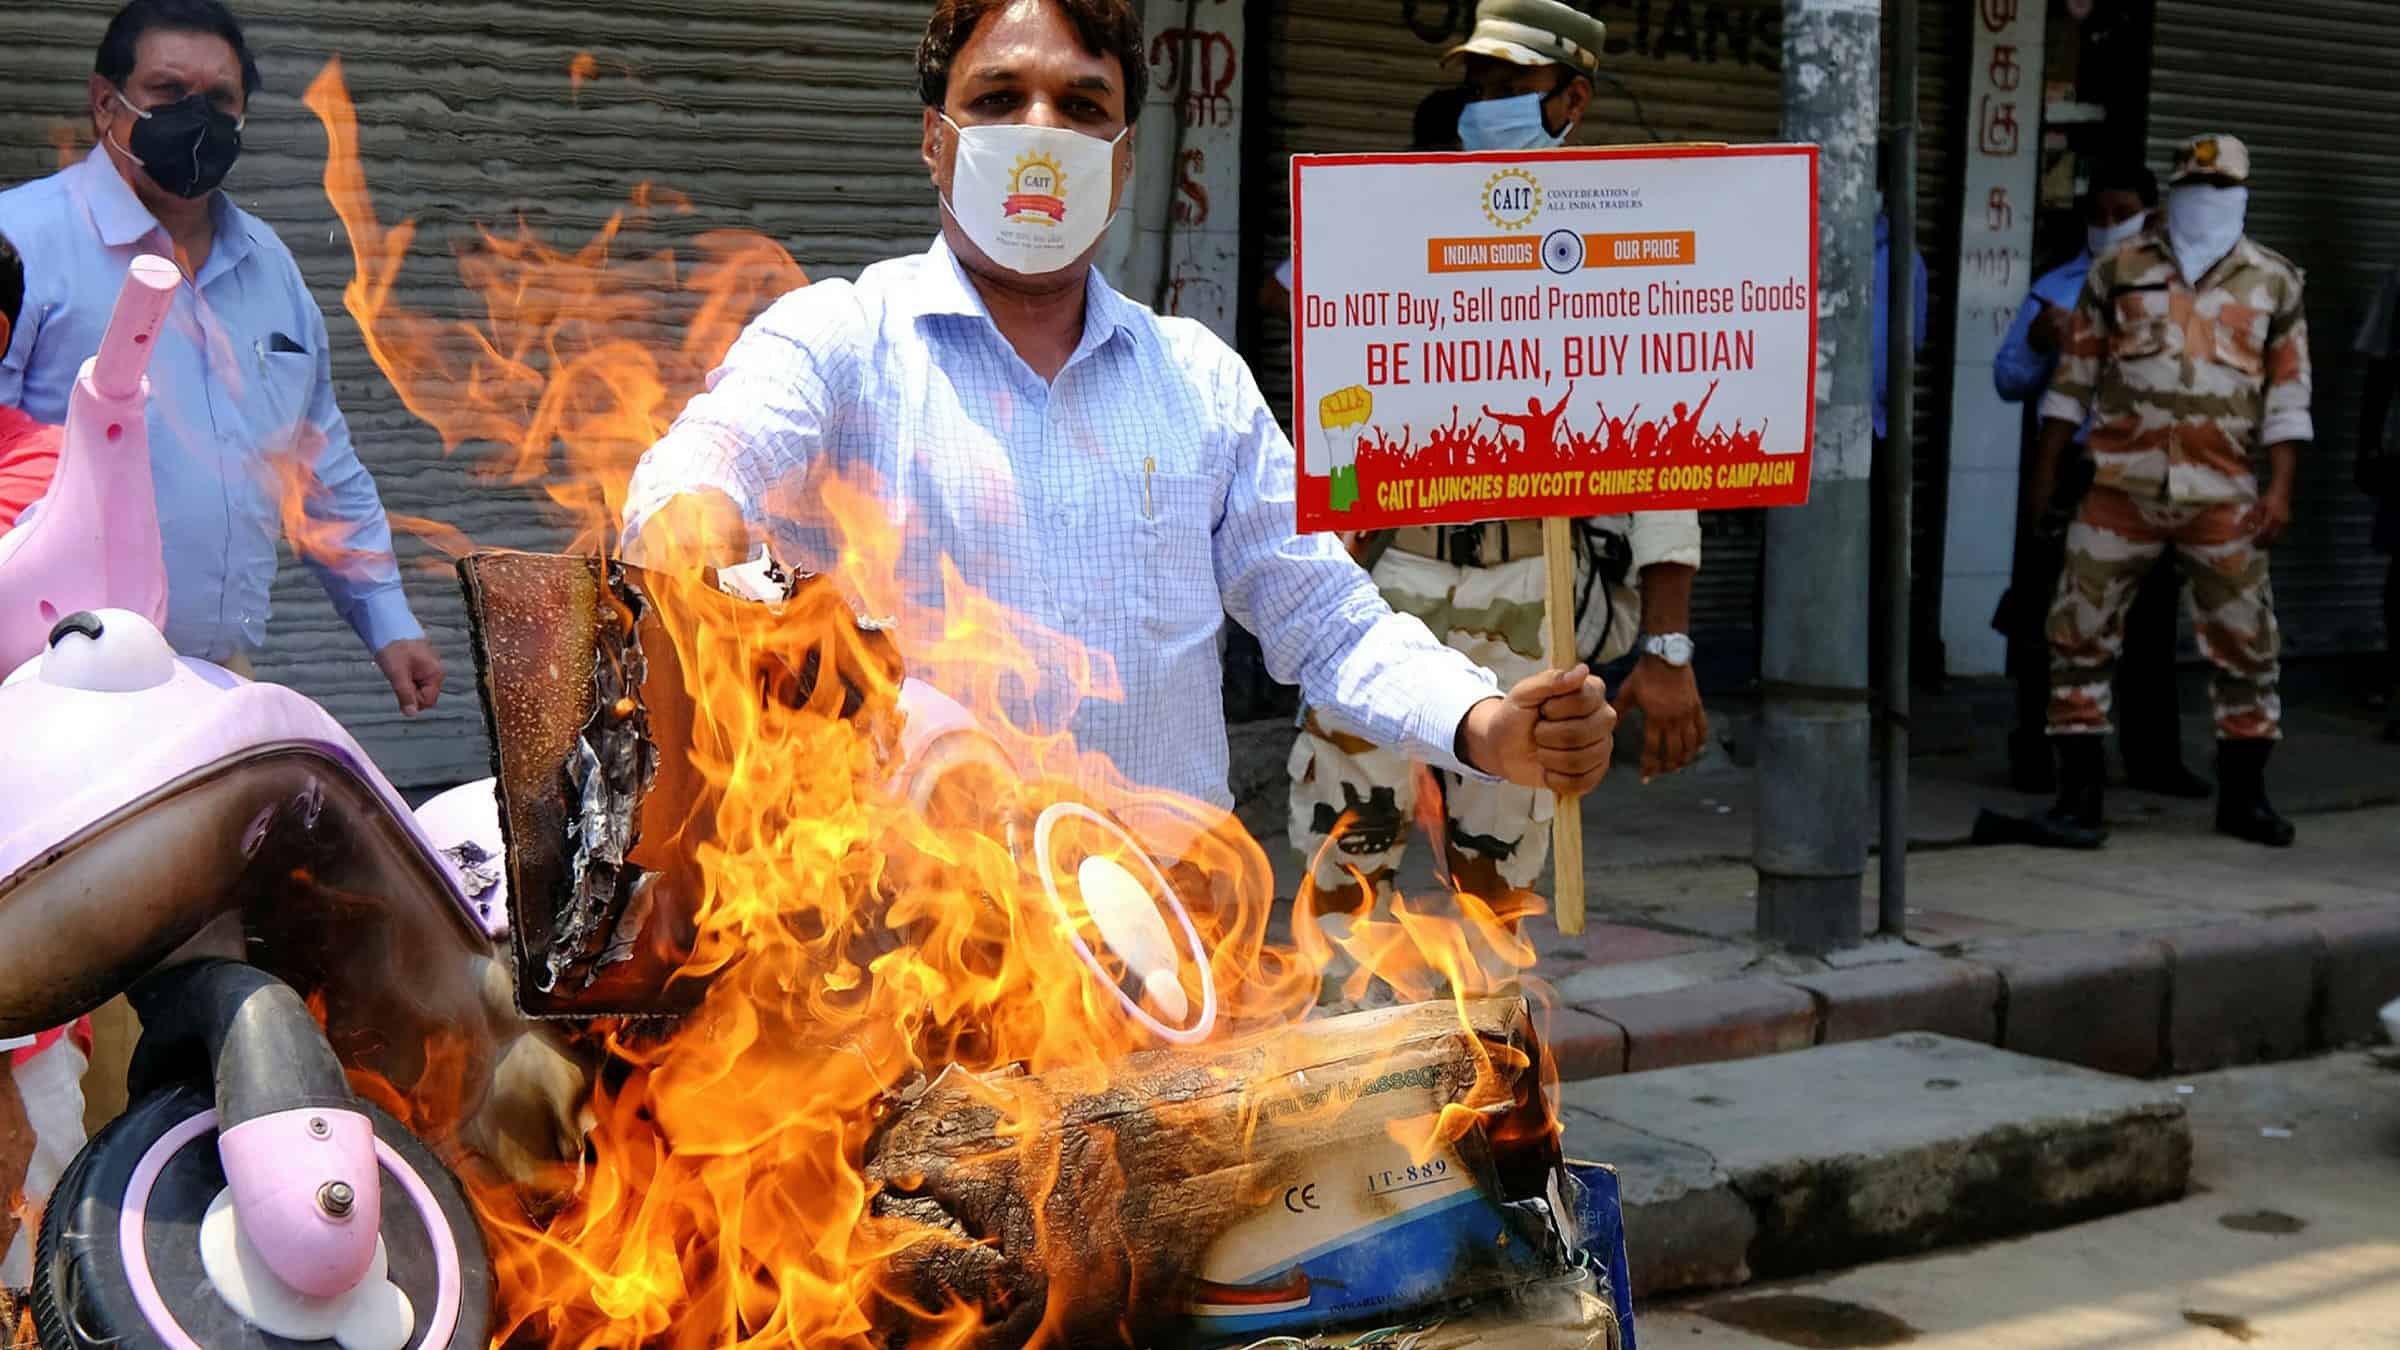 Người biểu tình Ấn Độ đốt hàng hóa Trung Quốc ở thủ đô New Delhi trong tuần này. Ảnh: Bloomberg